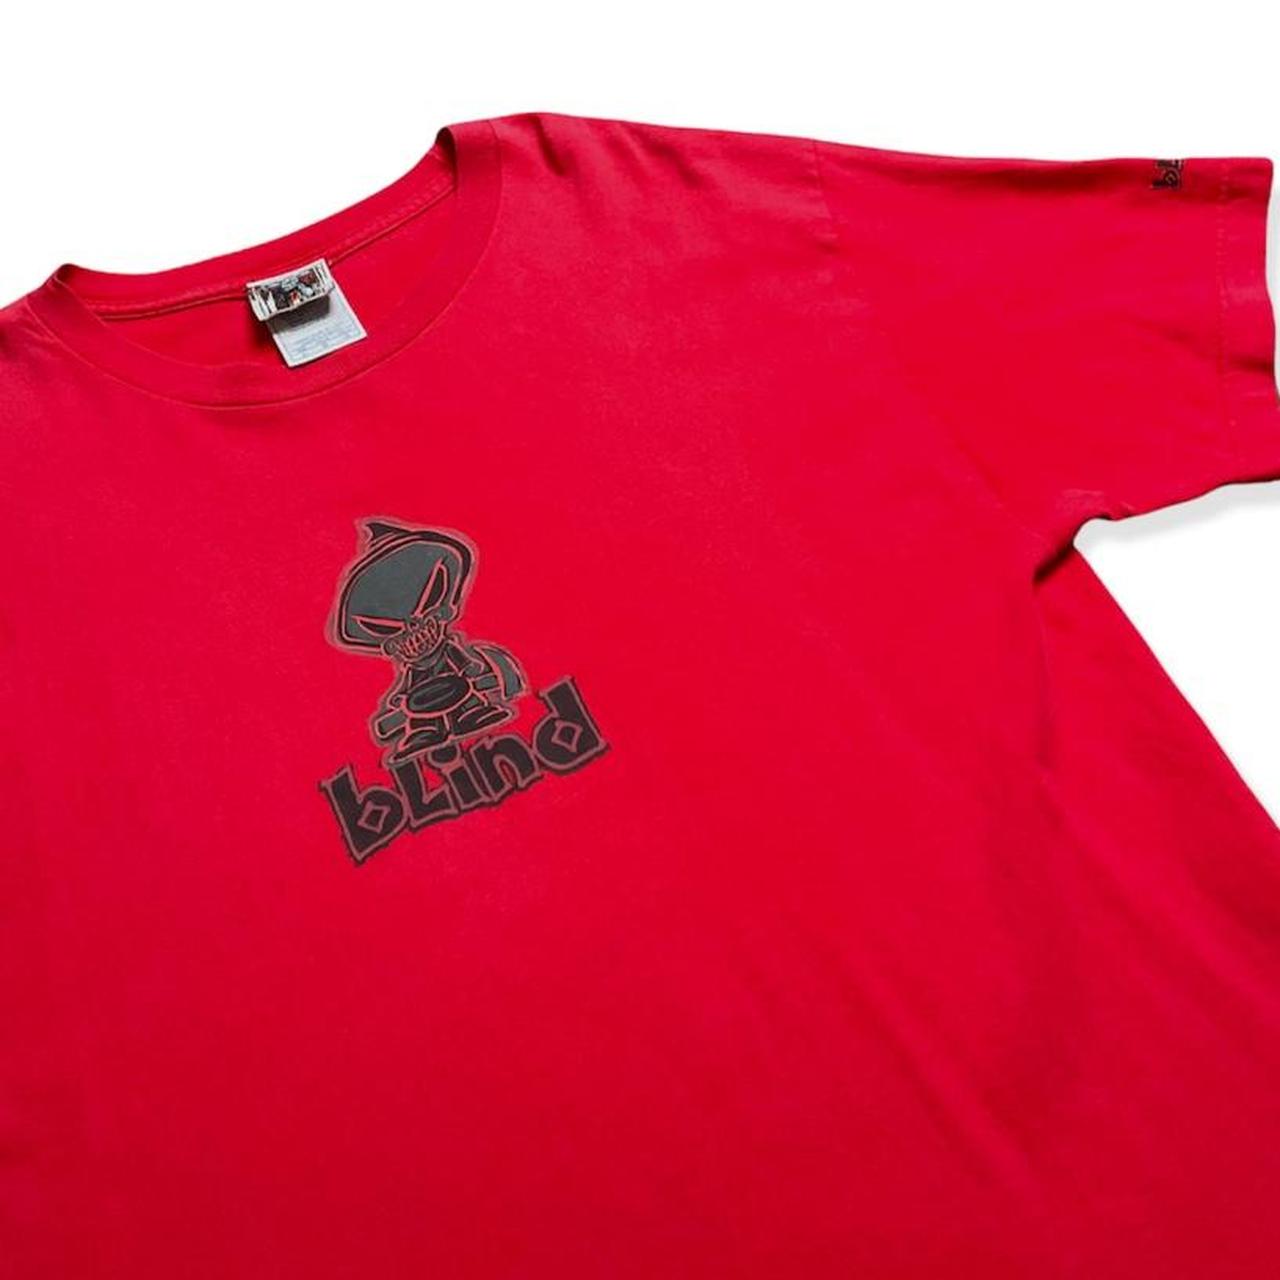 Red Blind 2000's Skateboard Shirt